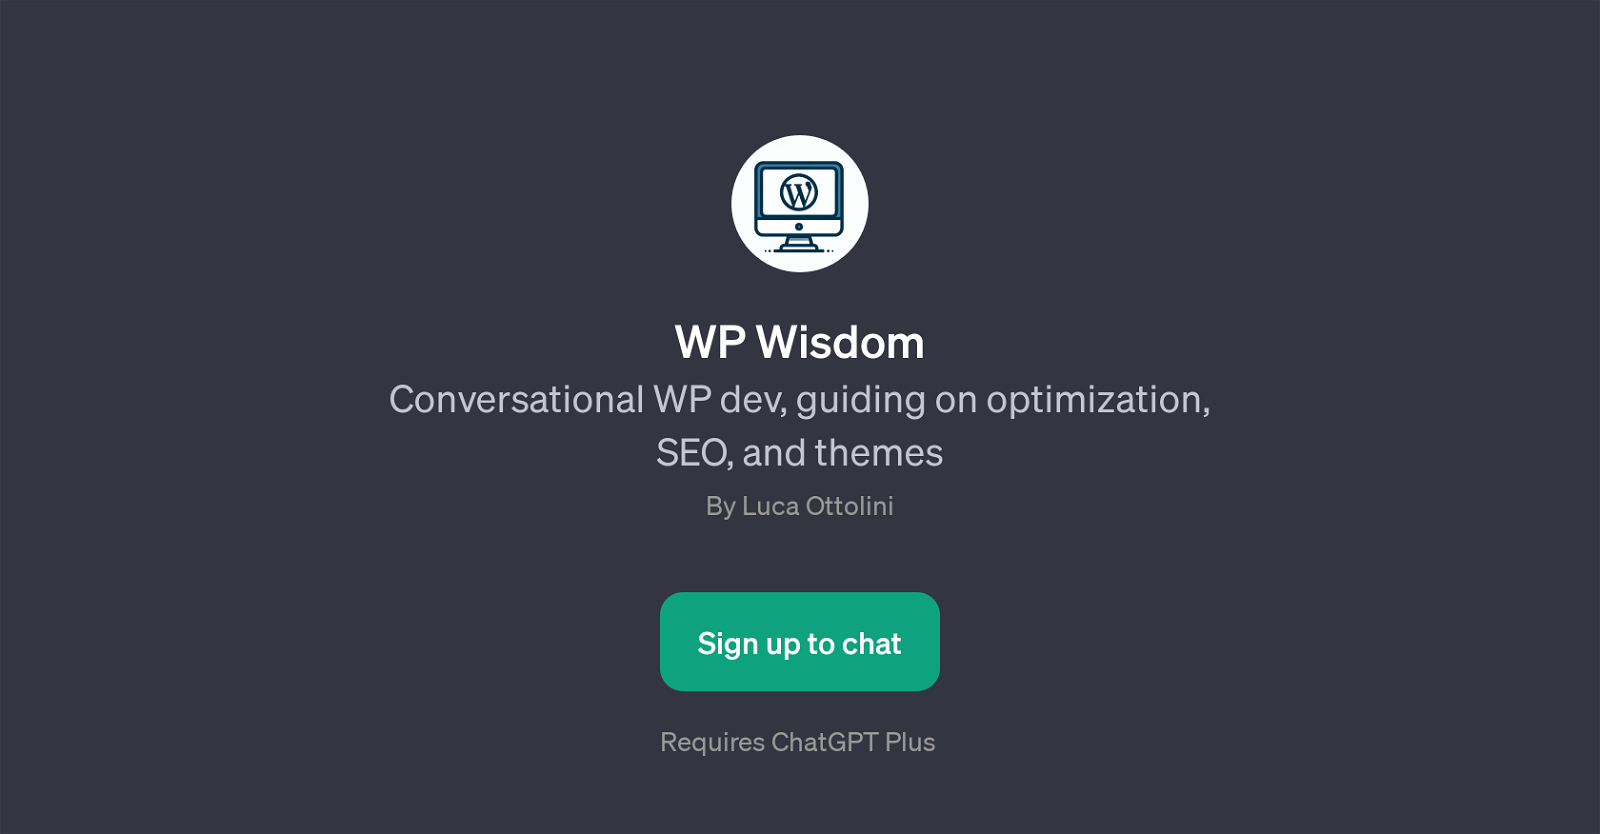 WP Wisdom website